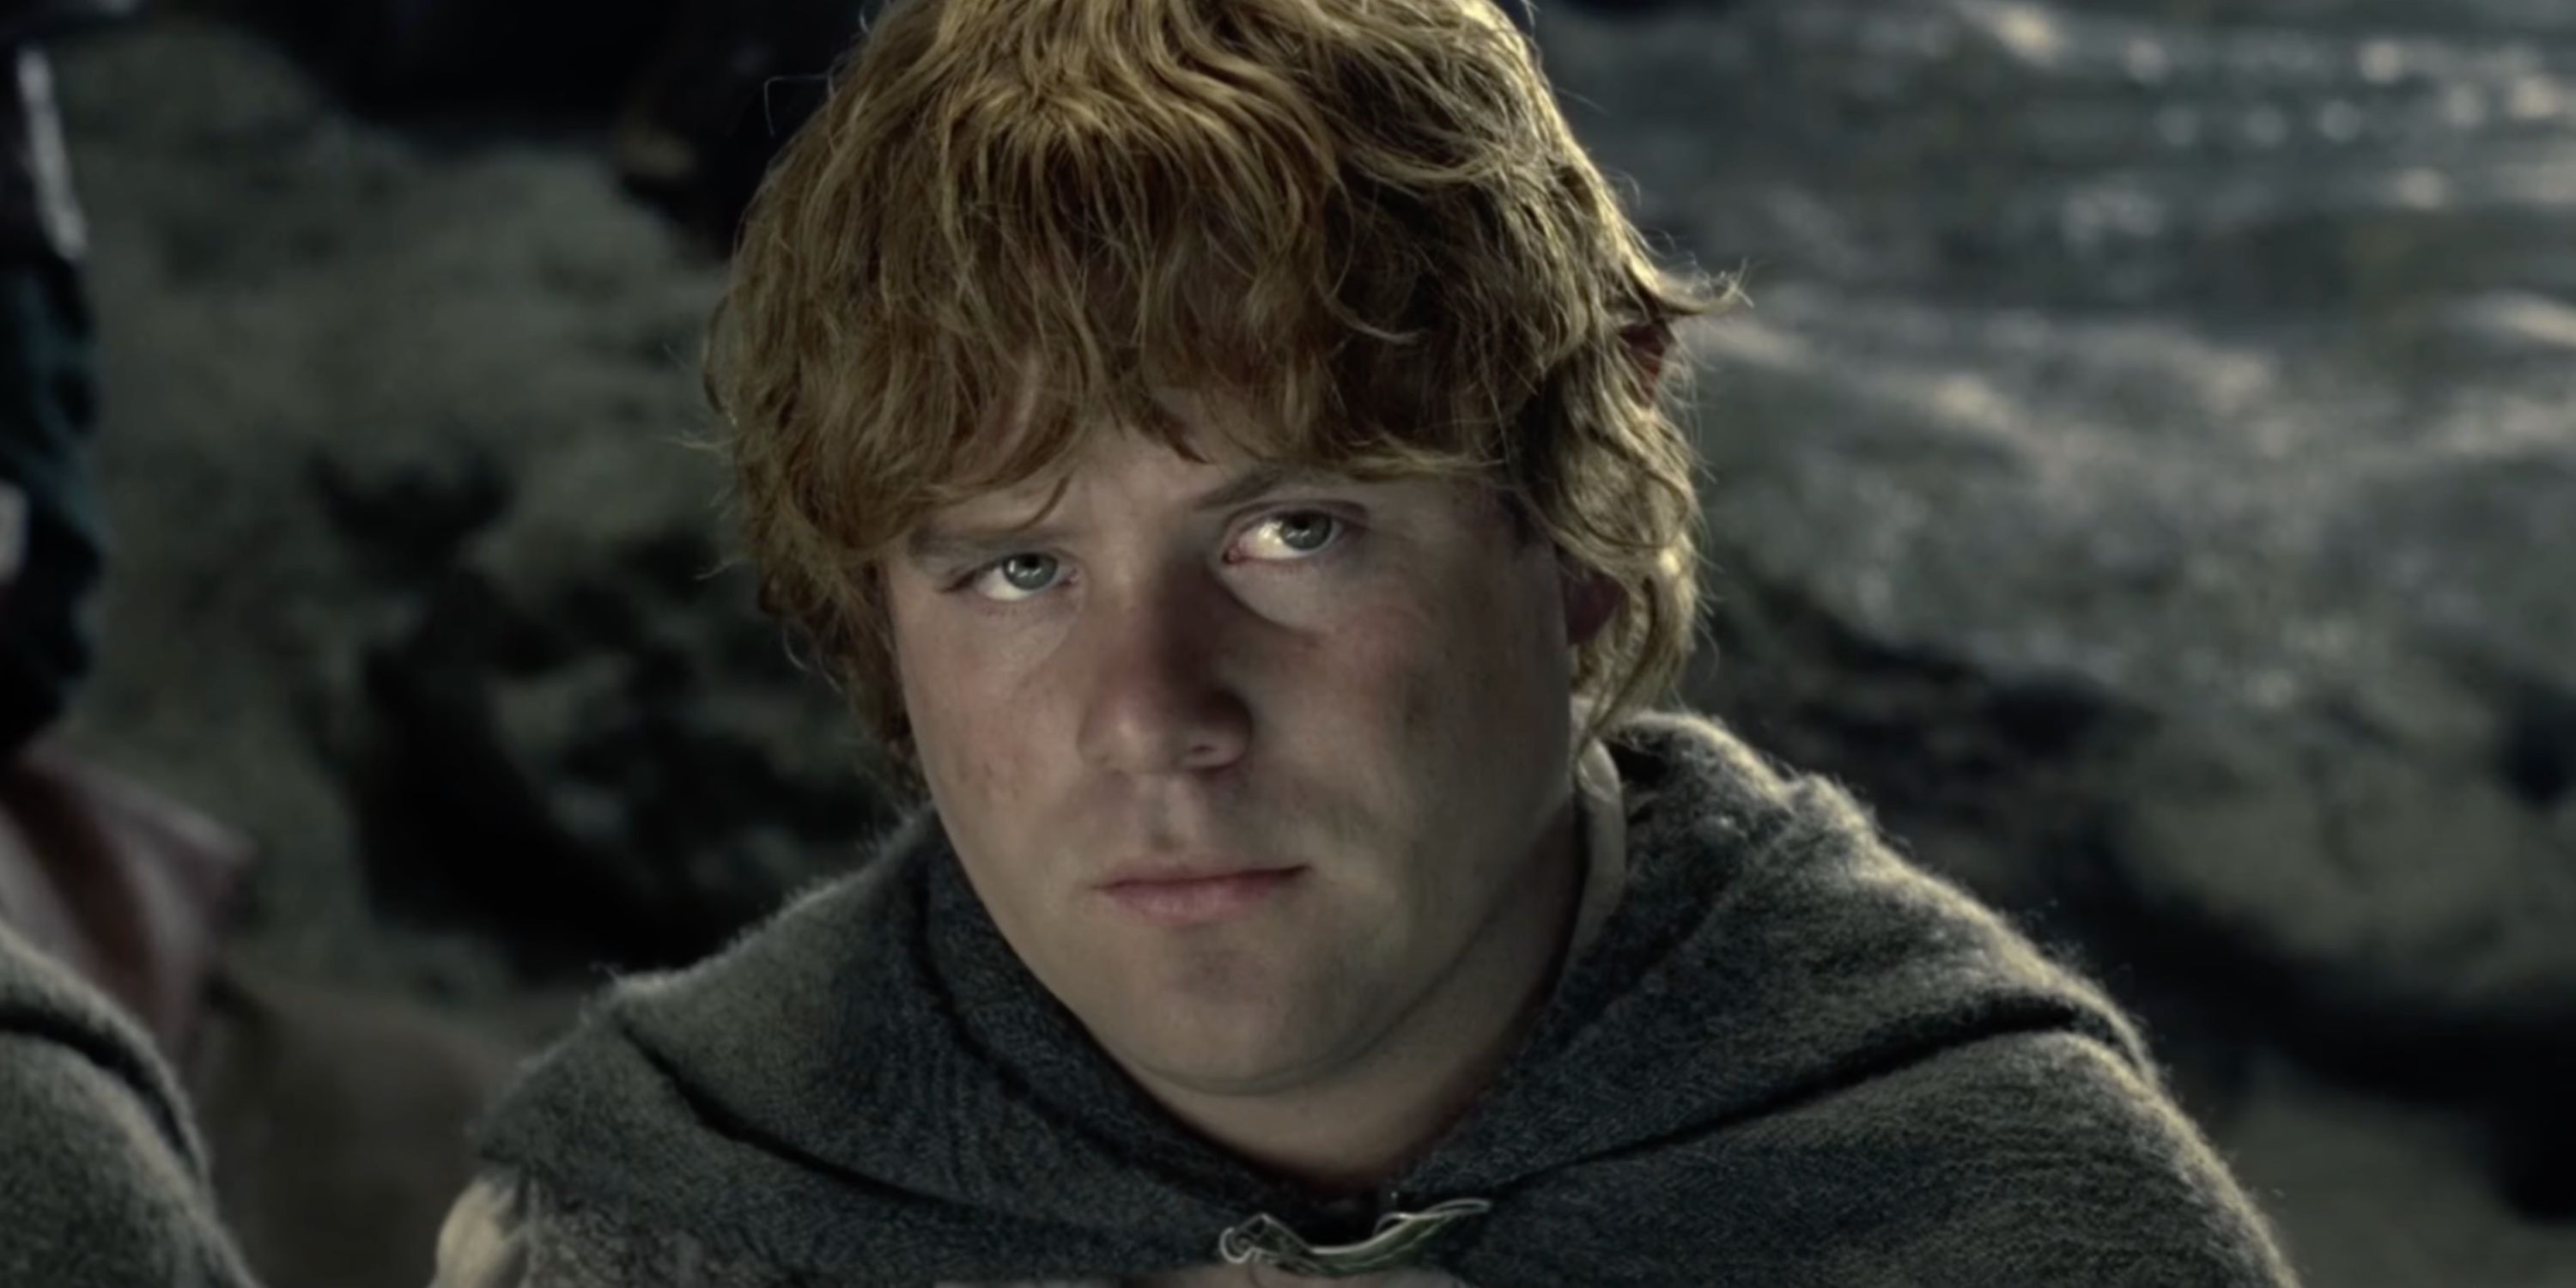 Сэм хмурится после того, как его спросили, является ли он охранником Фродо